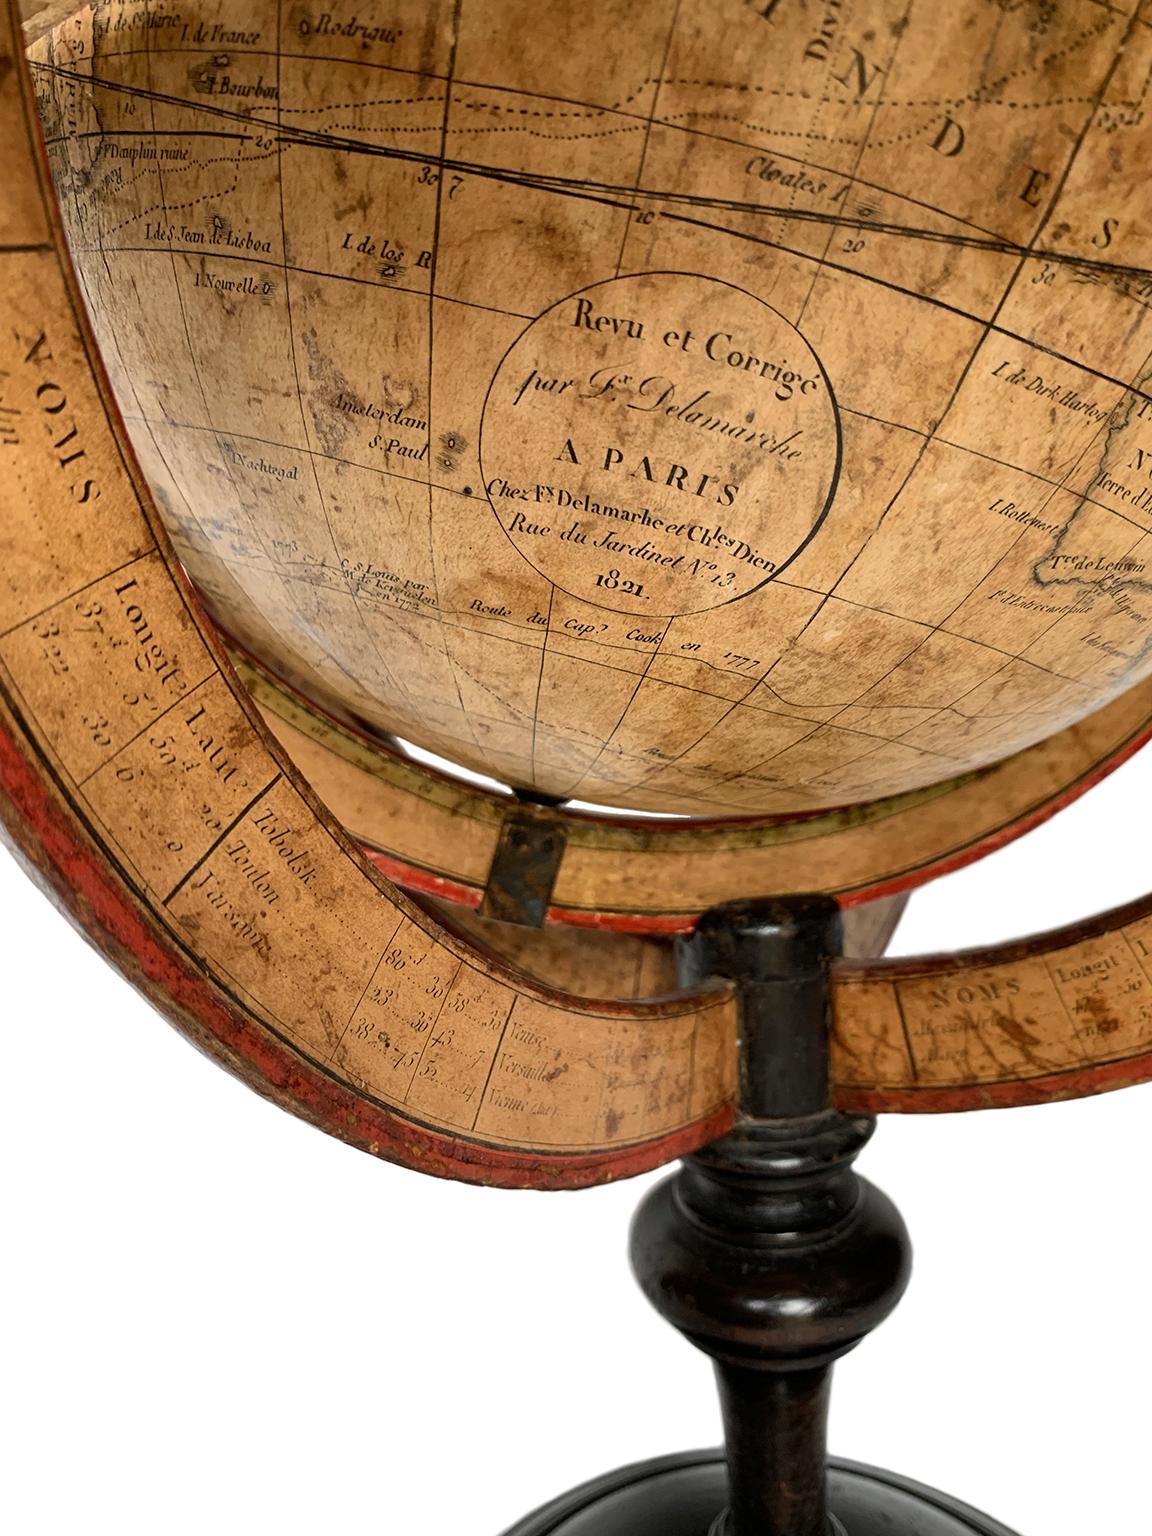 Globe terrestre de table
Félix Delamarche
Paris, 1821
Il mesure 20,47 in de hauteur, Ø max 14,17 in ; la sphère Ø 9,44 in (h 52 cm x Ø max 36,5 cm ; la sphère Ø 24 cm).
Bois, imprimé, papier mâché et métal
Il repose sur sa base en bois tourné